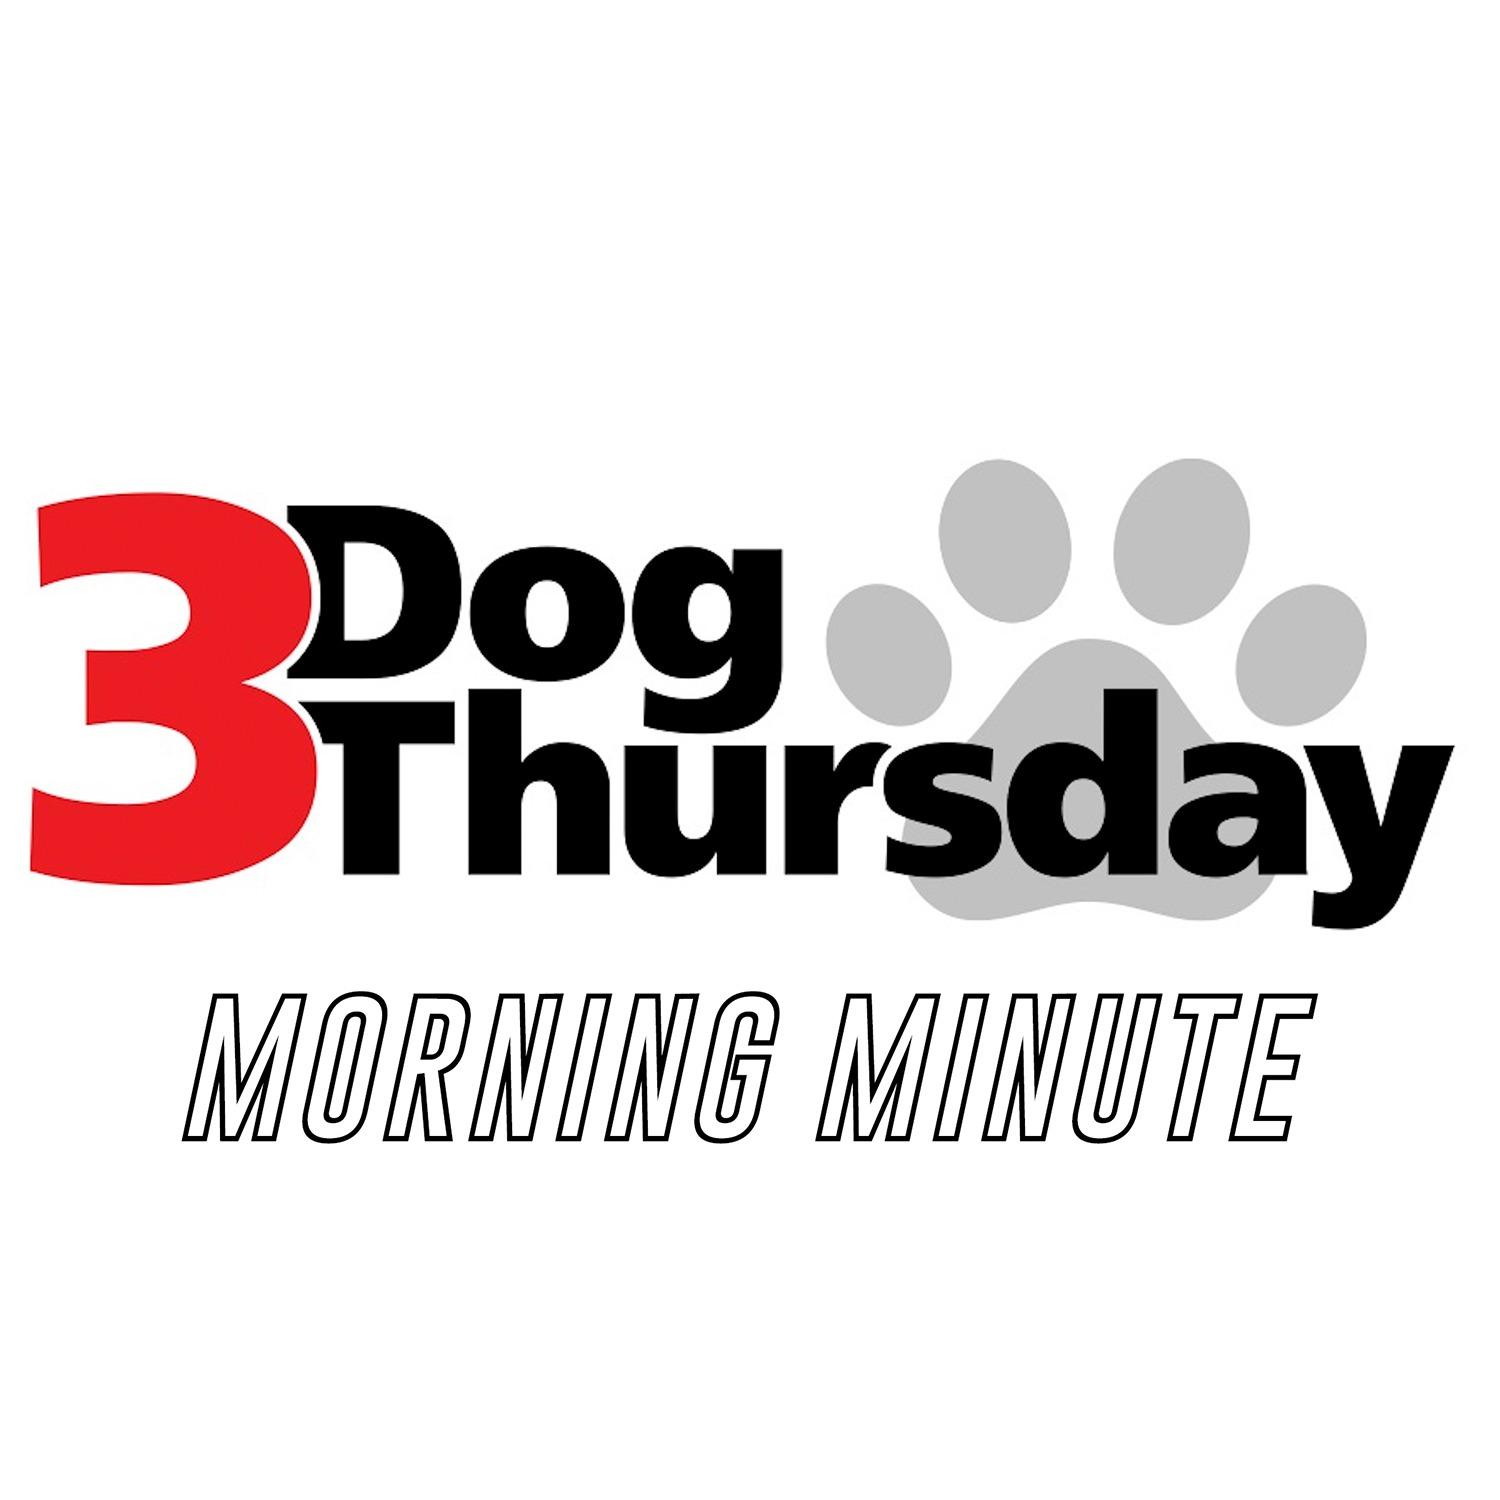 3 Dog Thursday Morning Minute